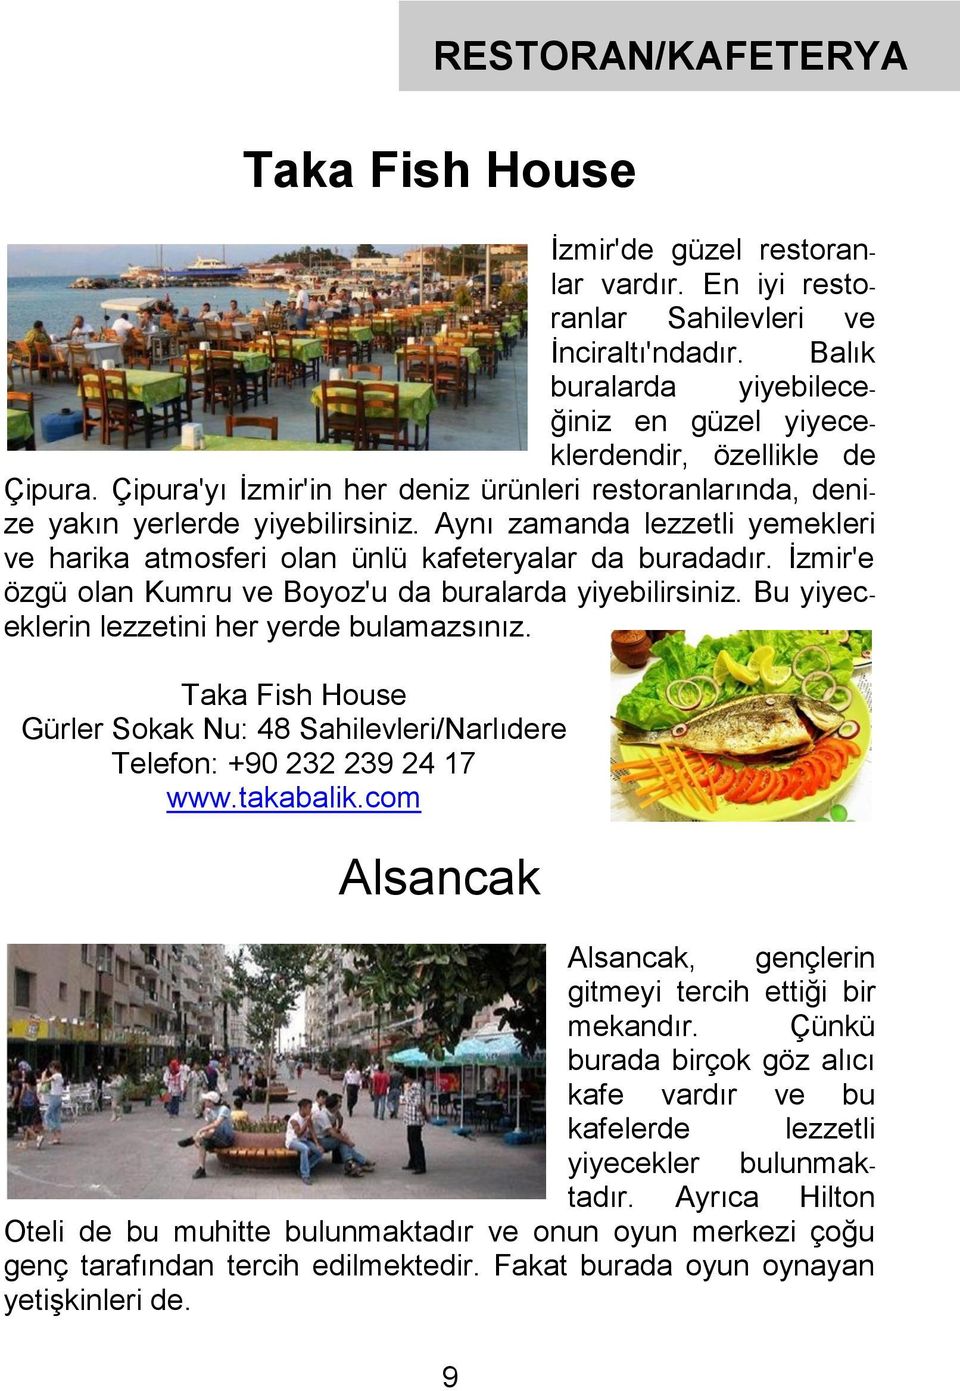 İzmir'e özgü olan Kumru ve Boyoz'u da buralarda yiyebilirsiniz. Bu yiyeceklerin lezzetini her yerde bulamazsınız.